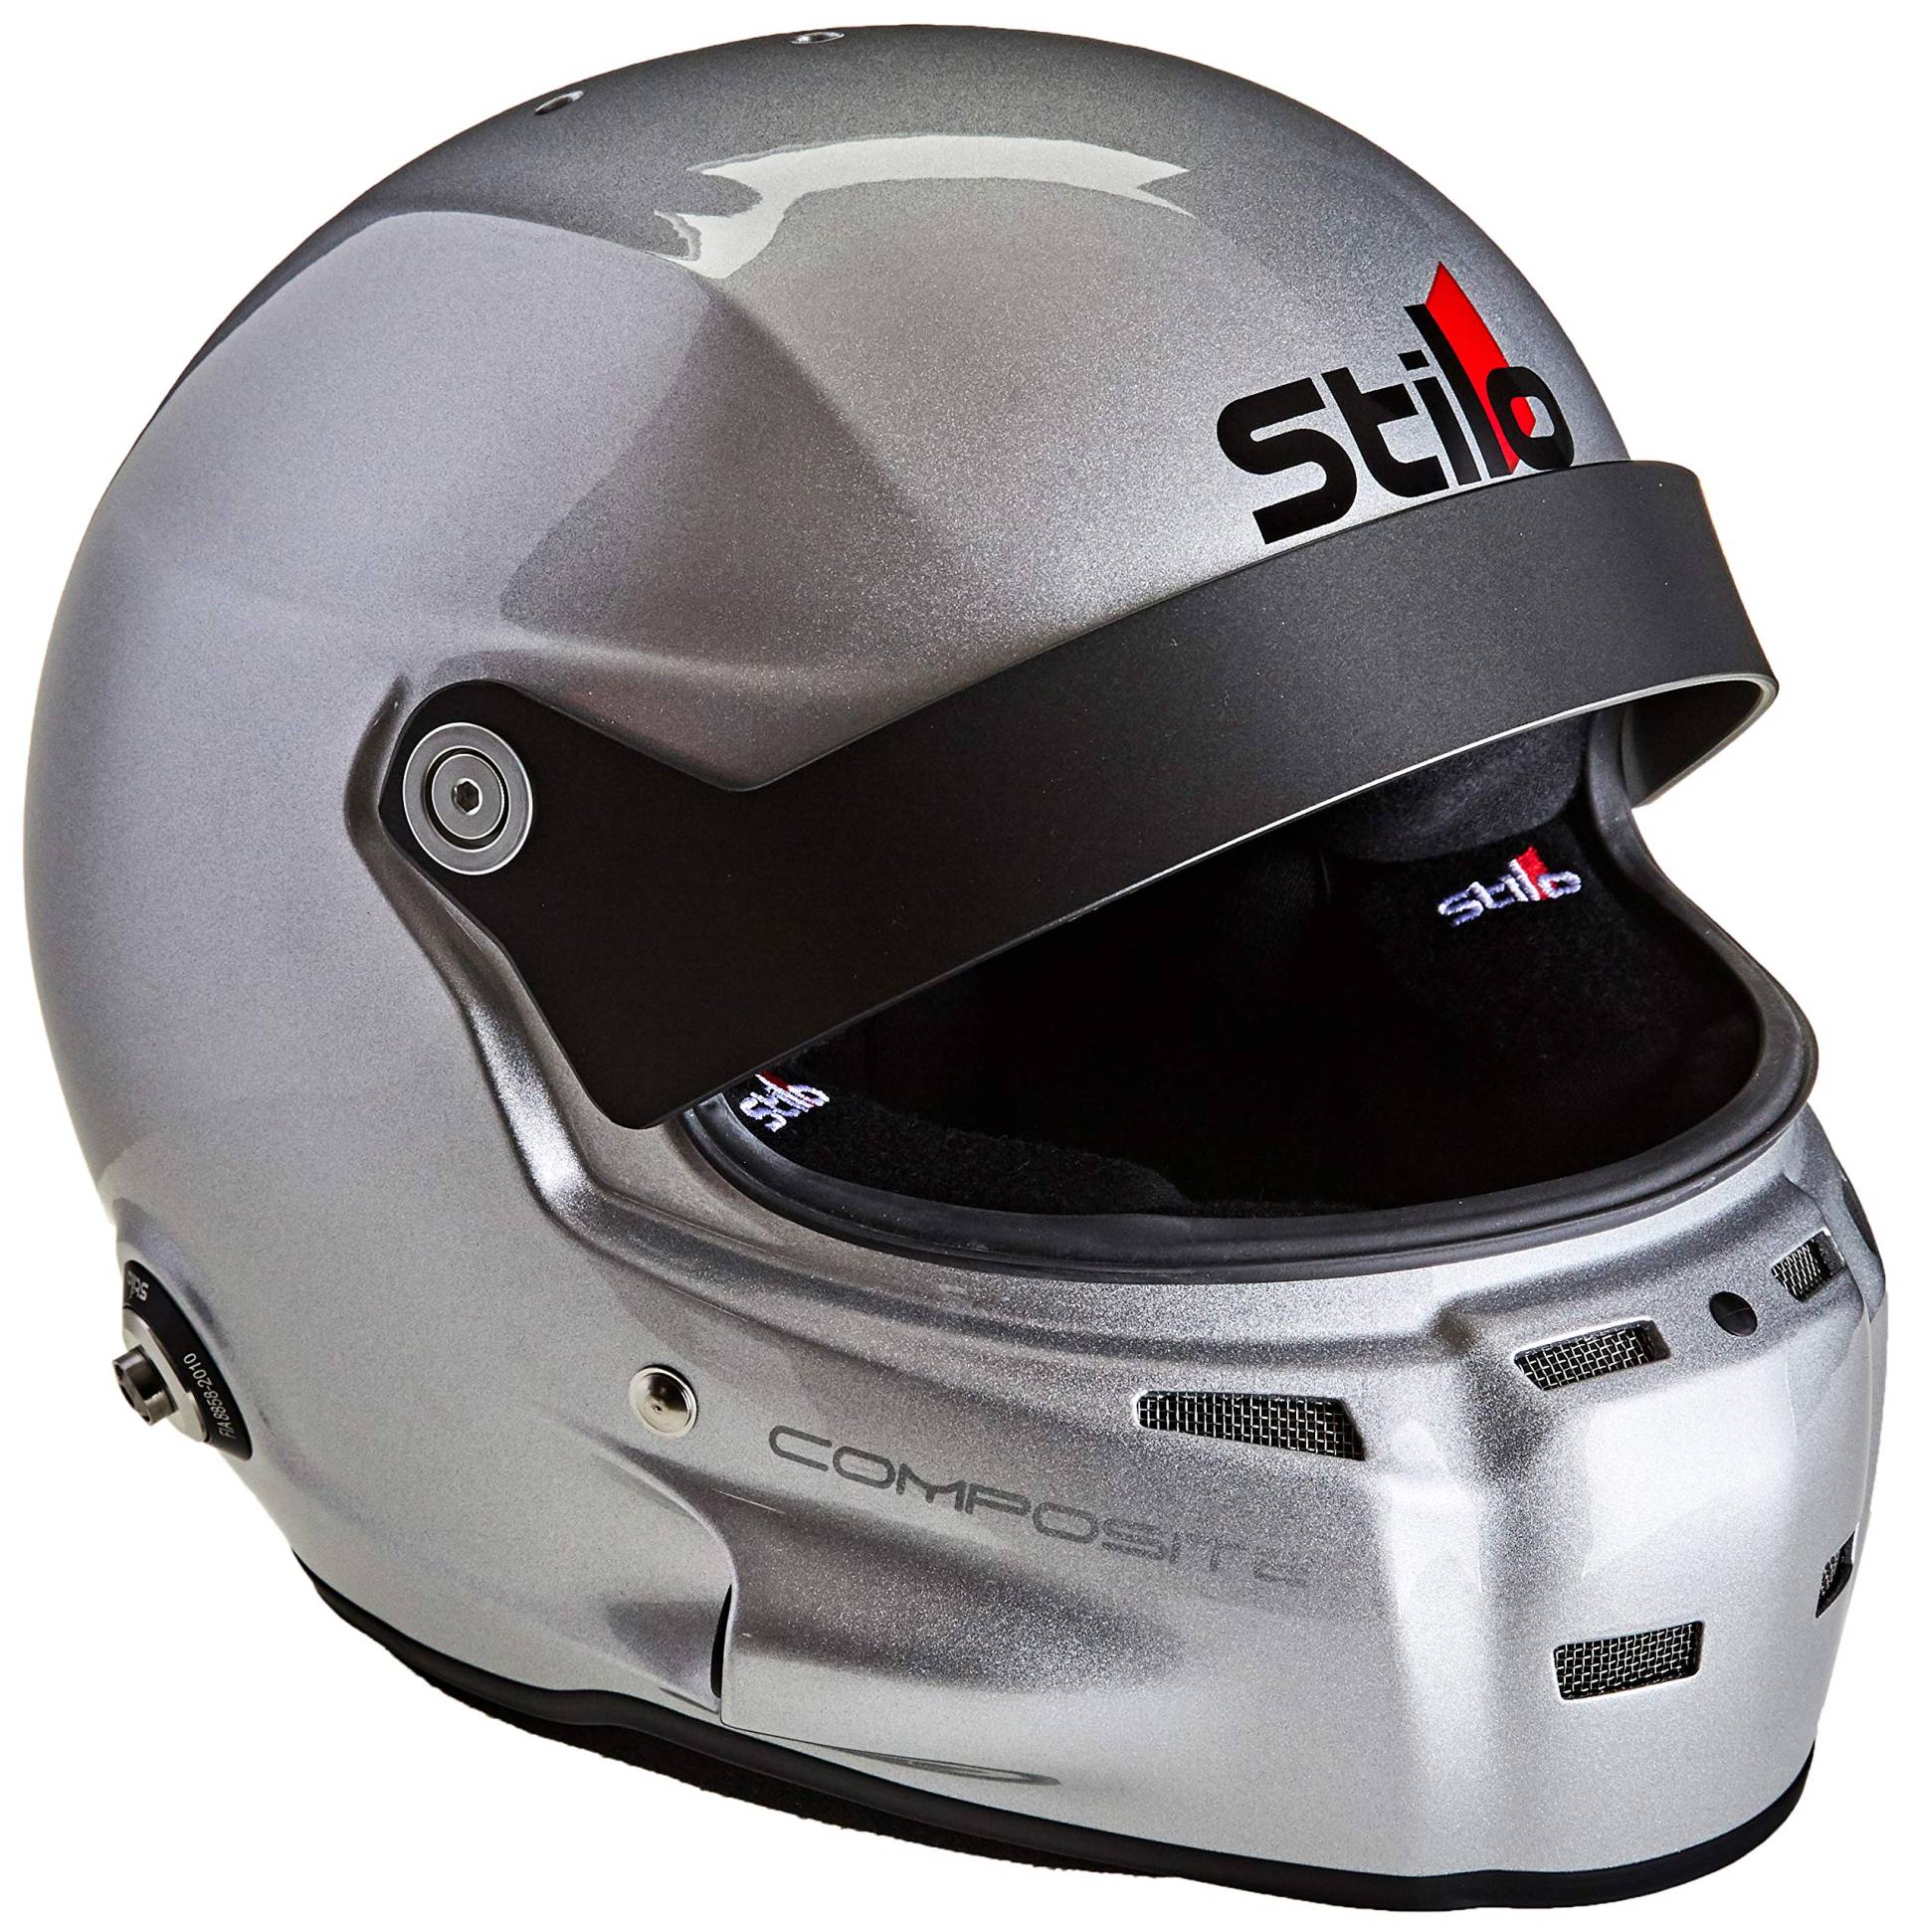 Stilo AA0702CG2M55 ST5GT Composite Electro Pista Helm 55 von Stilo